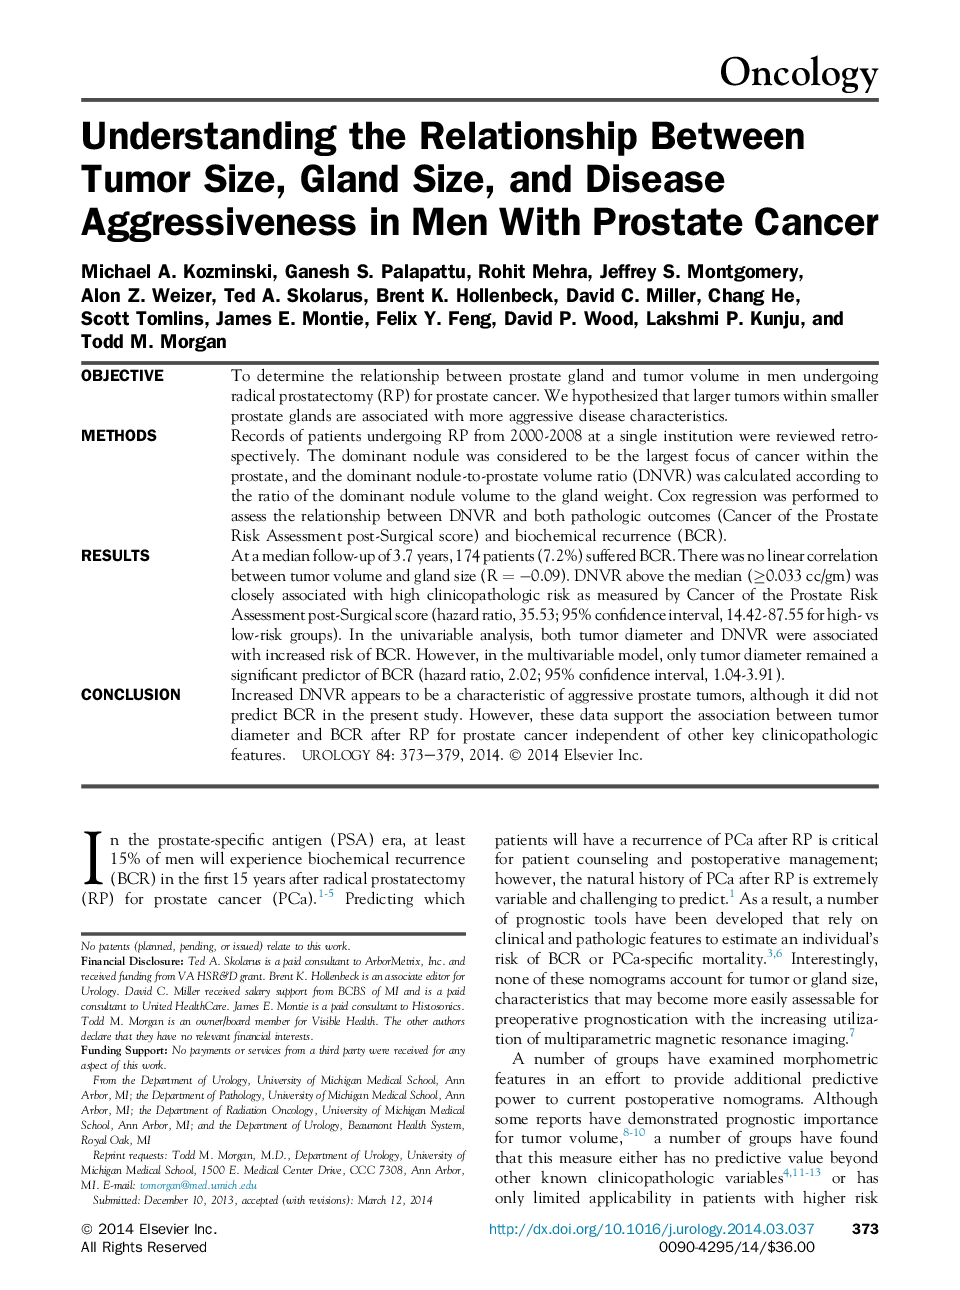 درک رابطه بین اندازه تومور، اندازه غده، و تهاجم بیماری در مردان مبتلا به سرطان پروستات 